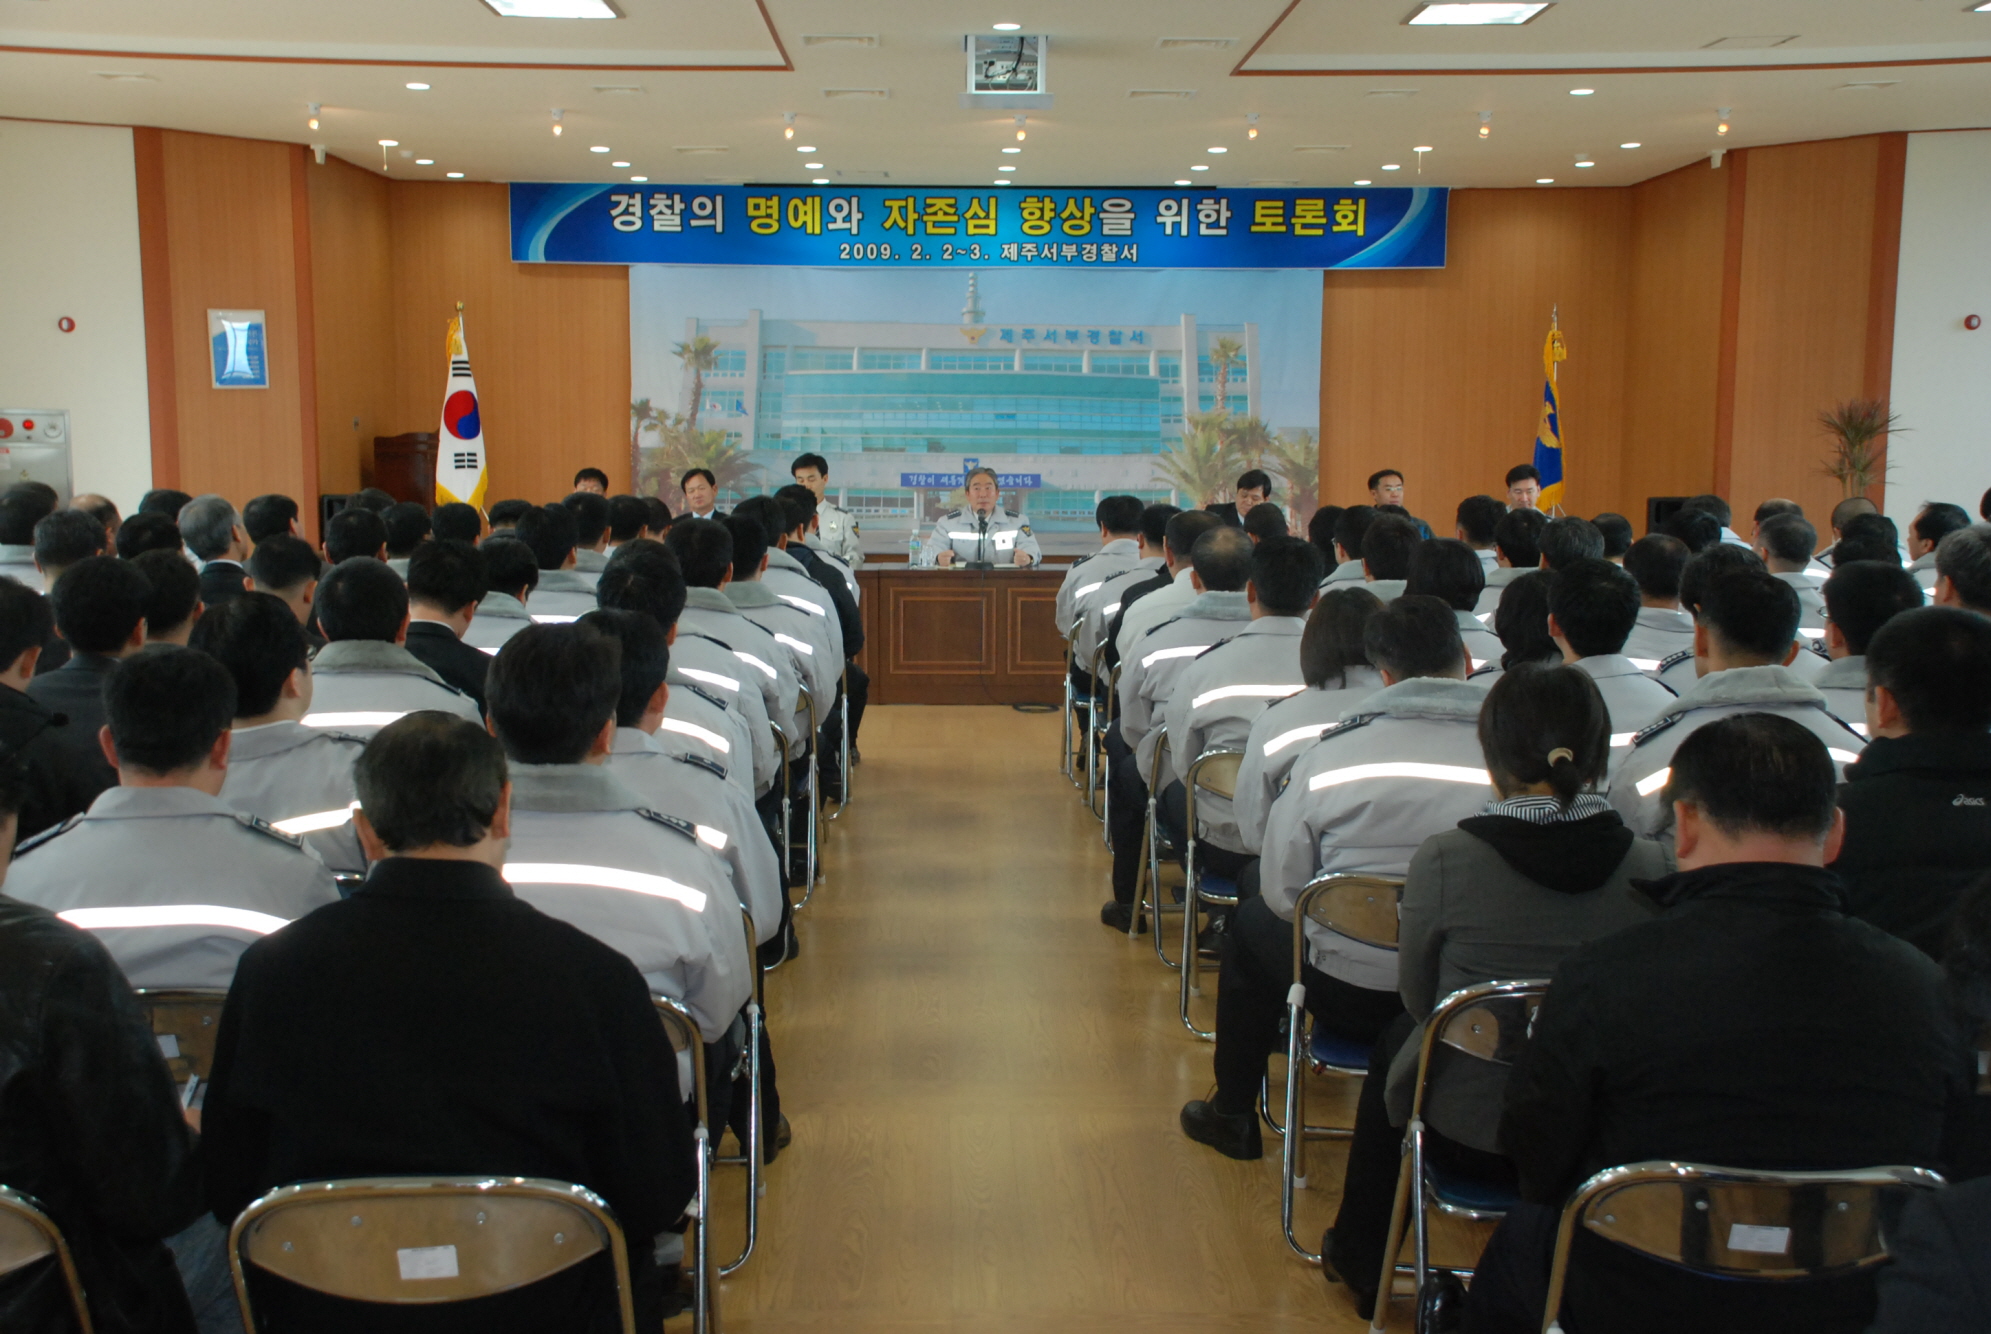 경찰의 명예와 자존심 향상을 위한 토론회 개최